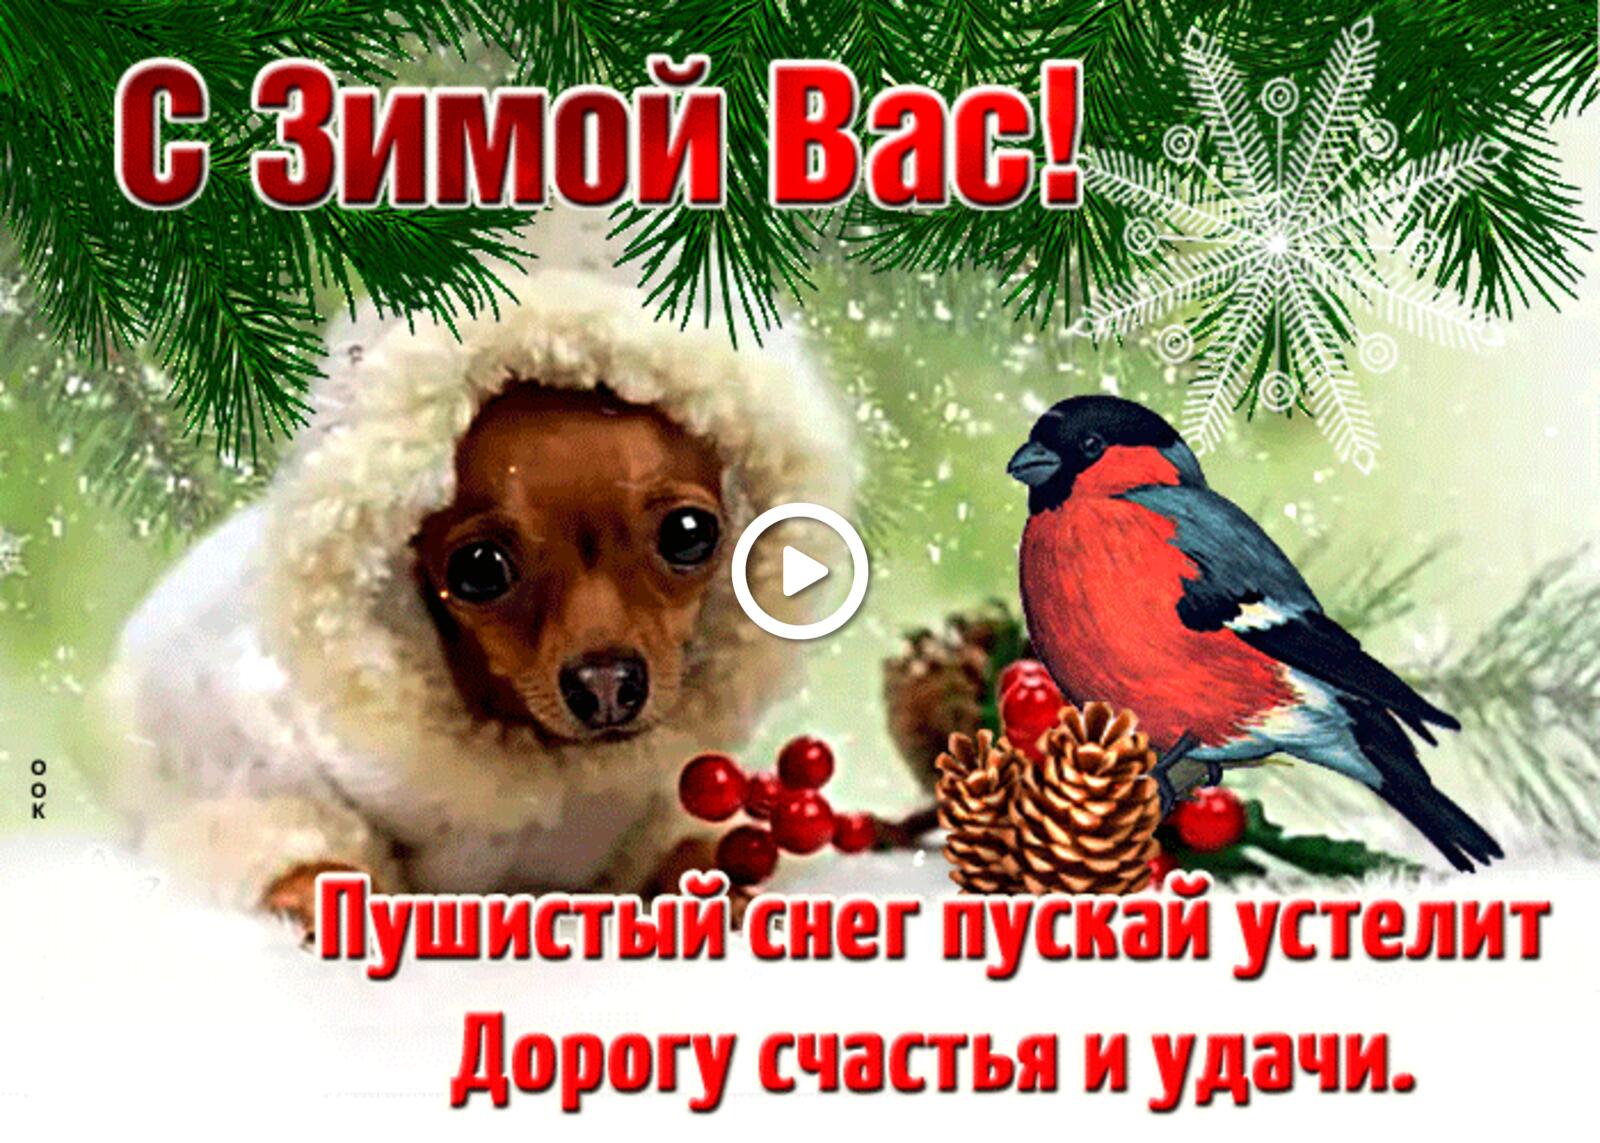 一张以祝你冬季快乐 幸福和好运 狗为主题的明信片